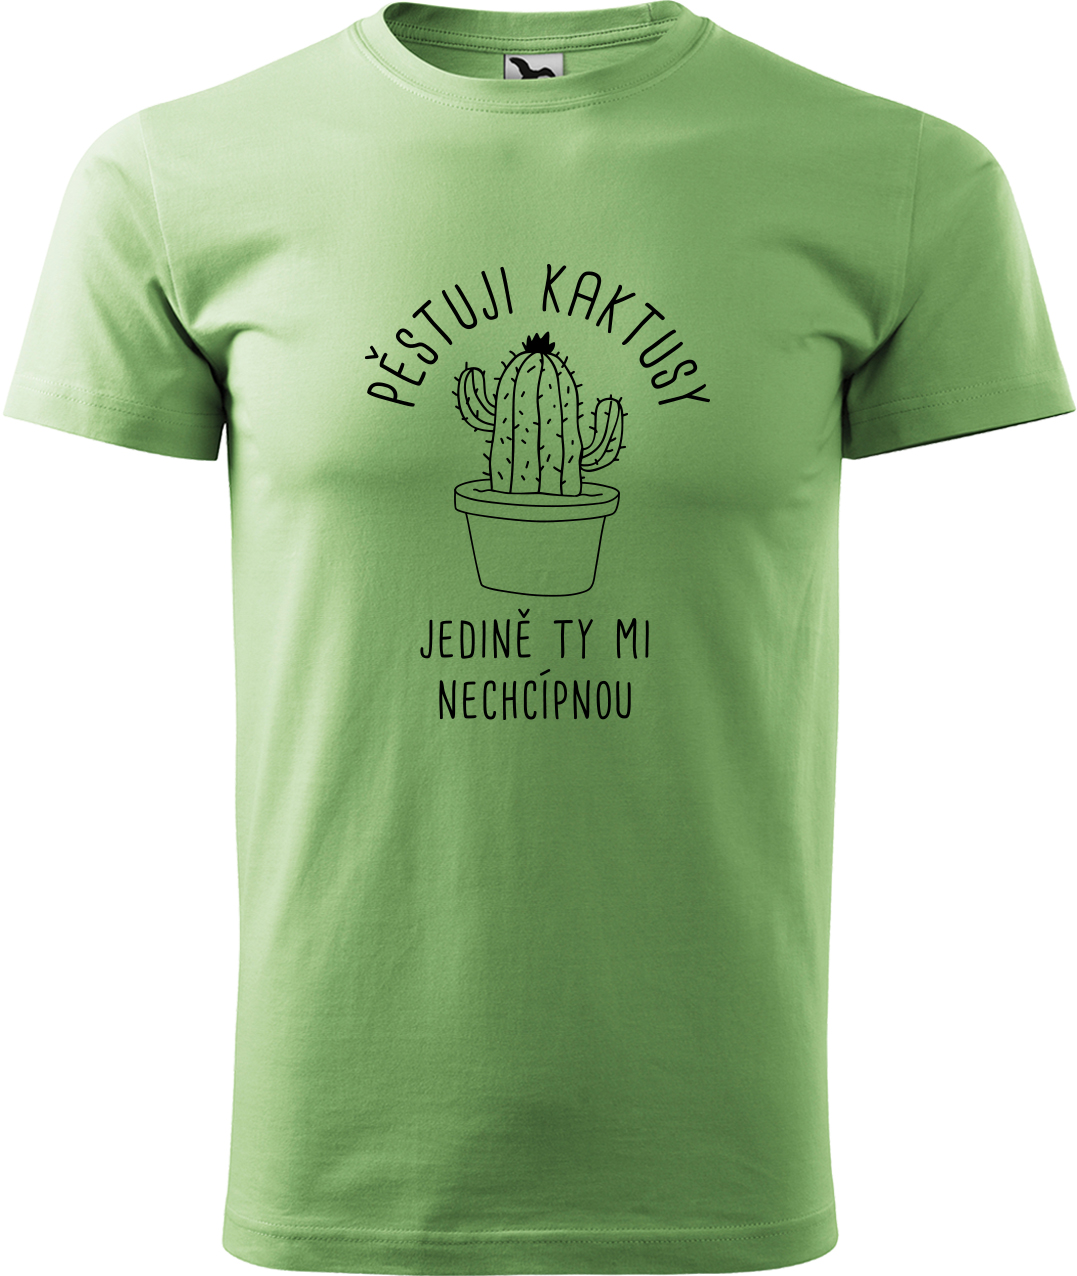 Tričko s kaktusem - Pěstuji kaktusy, jedině ty mi nechcípnou Velikost: M, Barva: Trávově zelená (39), Střih: pánský